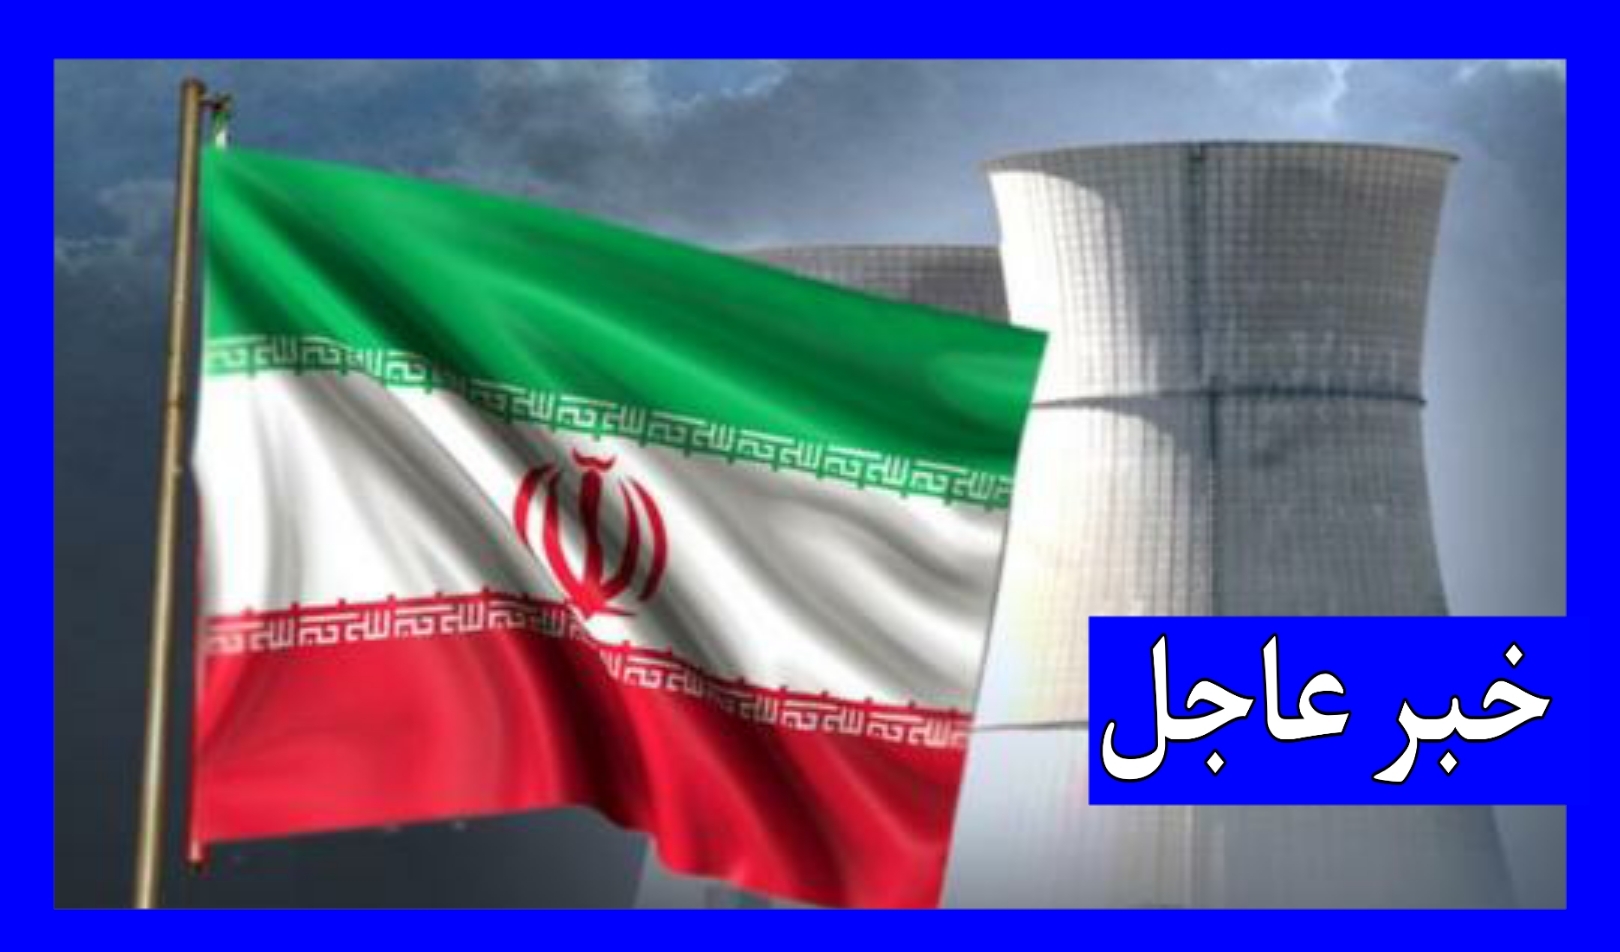 أعلنت وزارة الدفاع الإيرانية، الخميس، مقتل مهندس إيراني وإصابة موظف آخر في حادث بمركز أبحاث بقاعدة بارشين العسكرية التابعة لوزارة الدفاع الإيرانية.